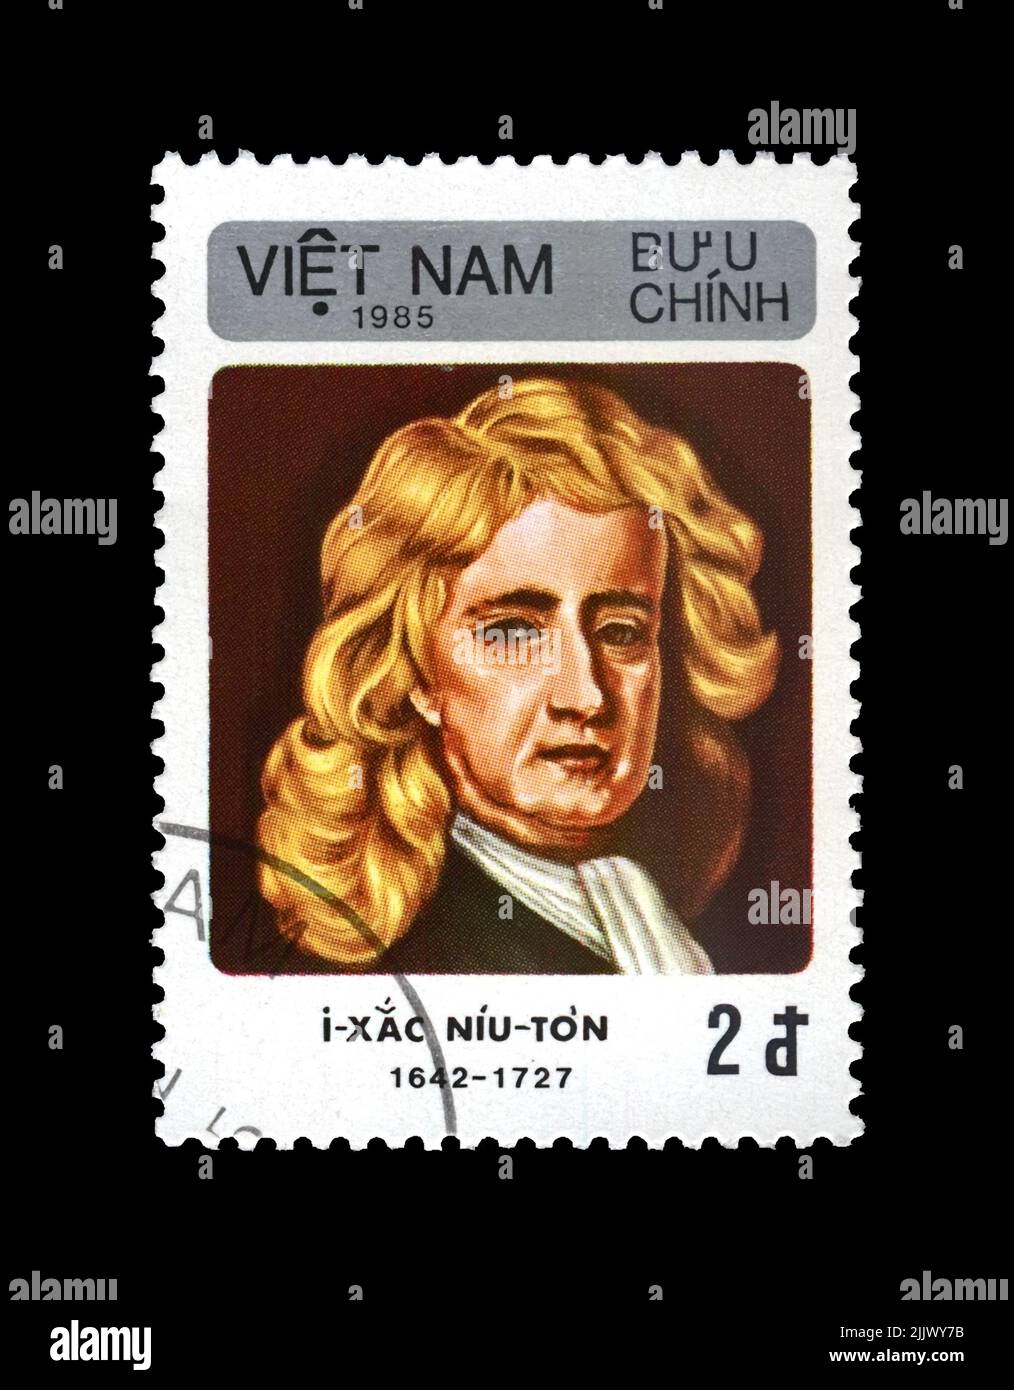 Isaac Newton (1642-1727), célèbre scientifique, explorateur, mathématicien, astronome, Observateur, vers 1985. Timbre postal vintage du Viet Nam isolé Banque D'Images